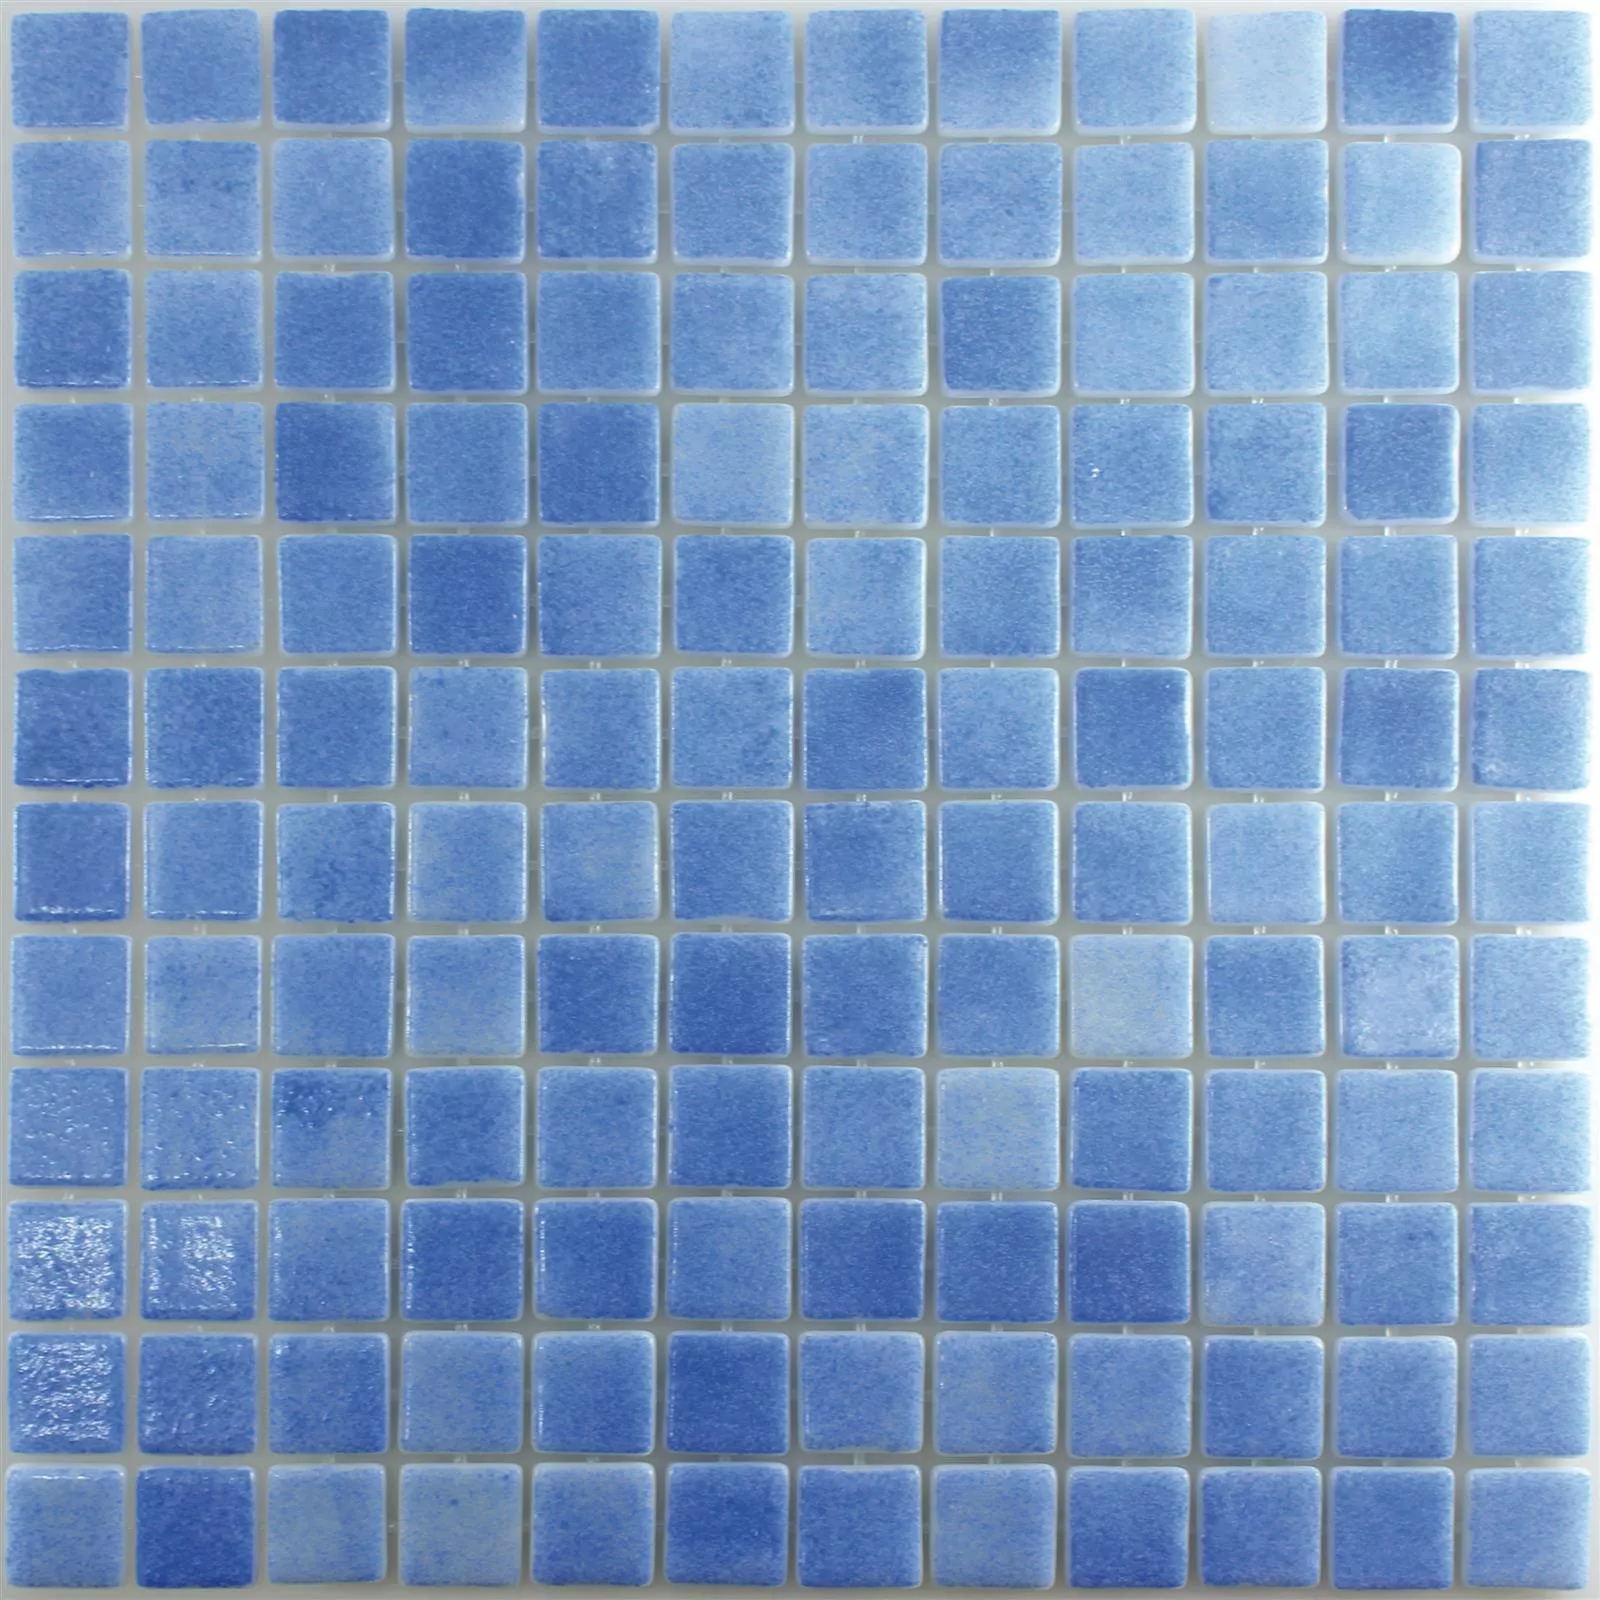 Cristal Piscina Mosaico Antonio Cielo Azul